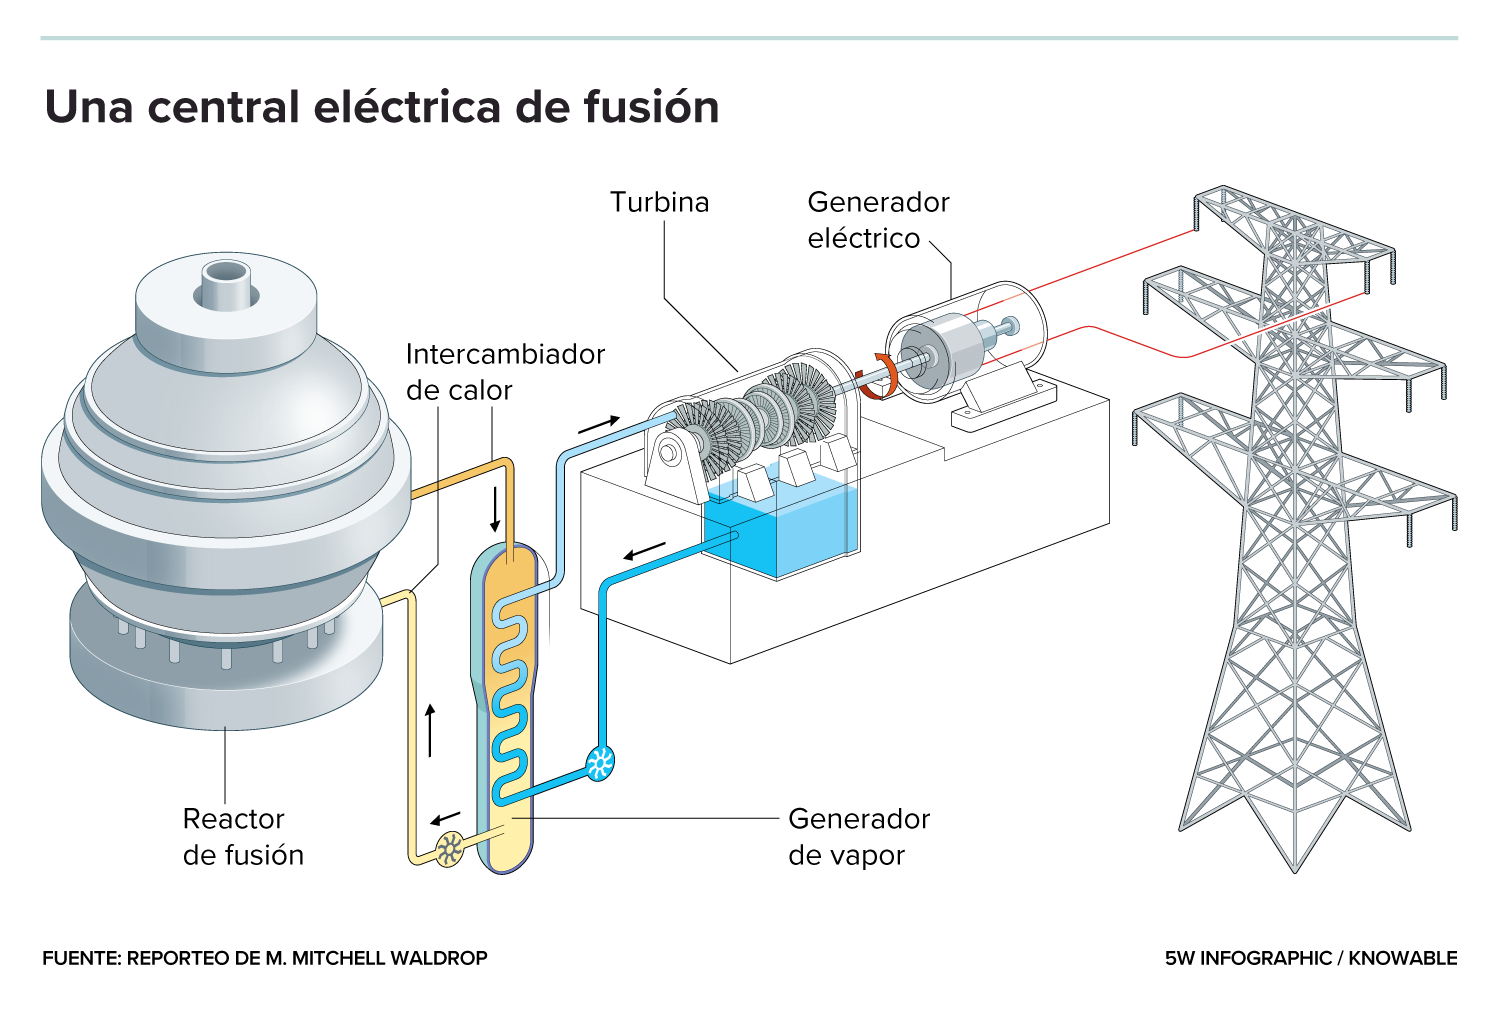 Gráfico de un reactor de fusión conectado a un generador de vapor y a una turbina unida a una torre de tendido eléctrico.